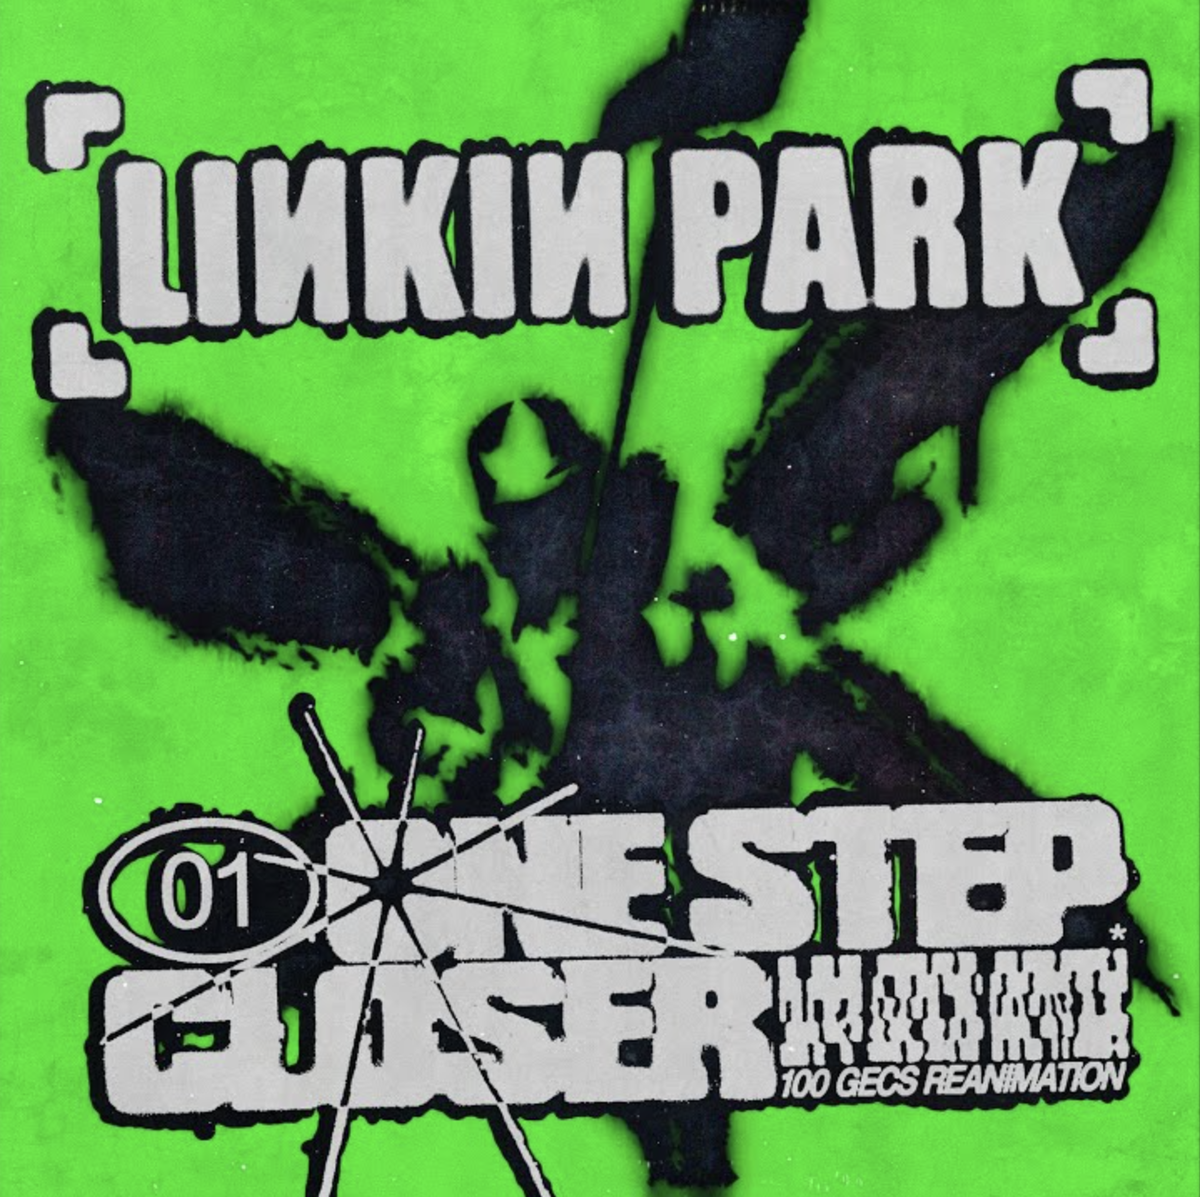 Linkin park one step closer. One Step closer. One Step closer 100 gecs. Linkin Park one Step closer обложка.